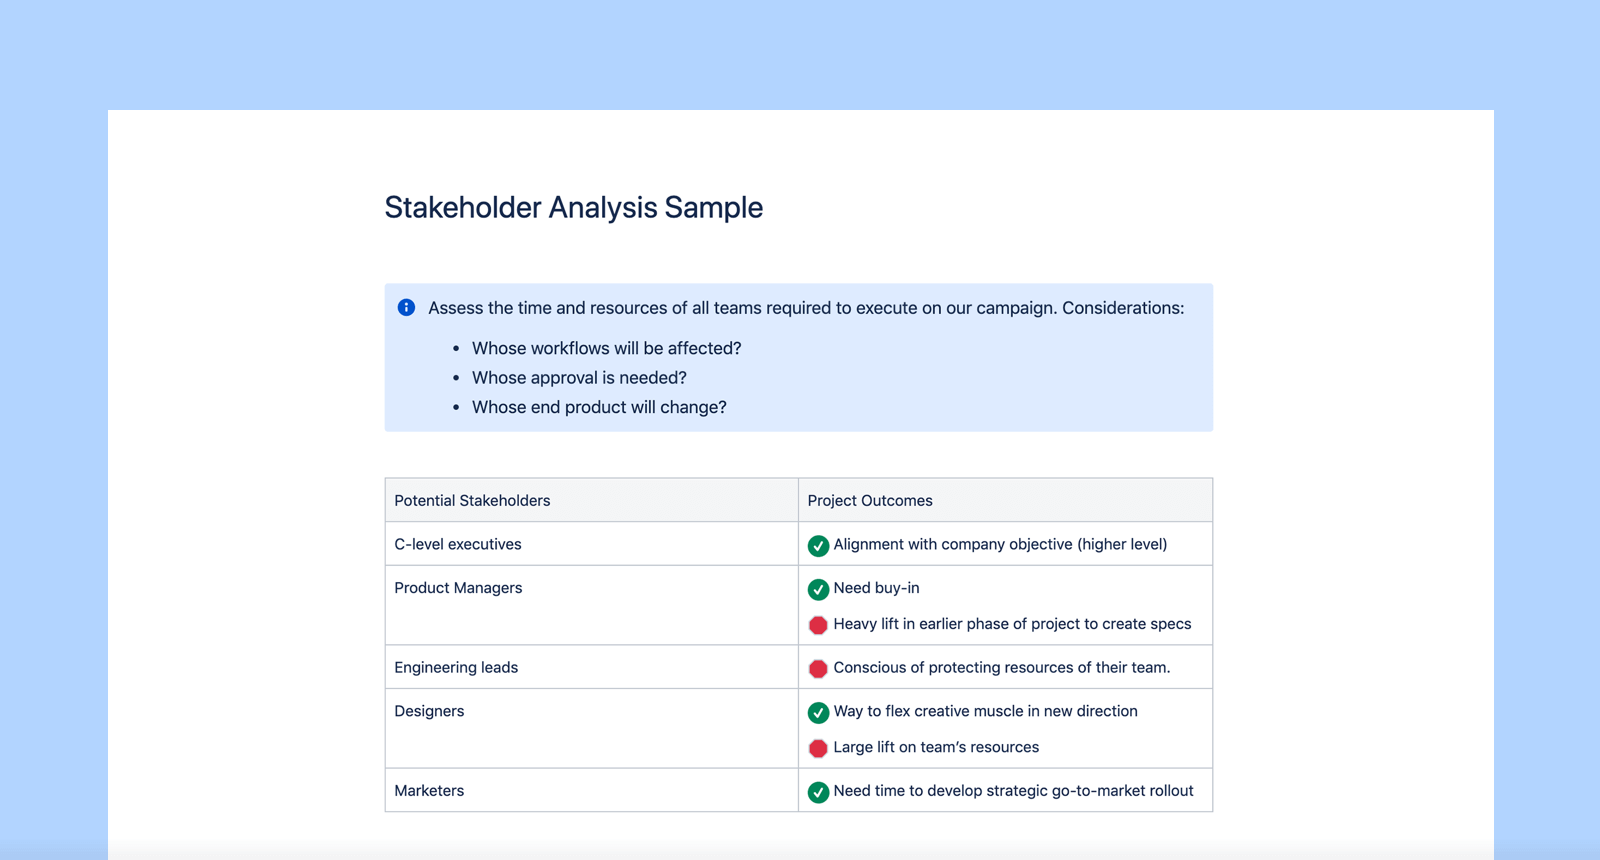 Stakeholder analysis sample